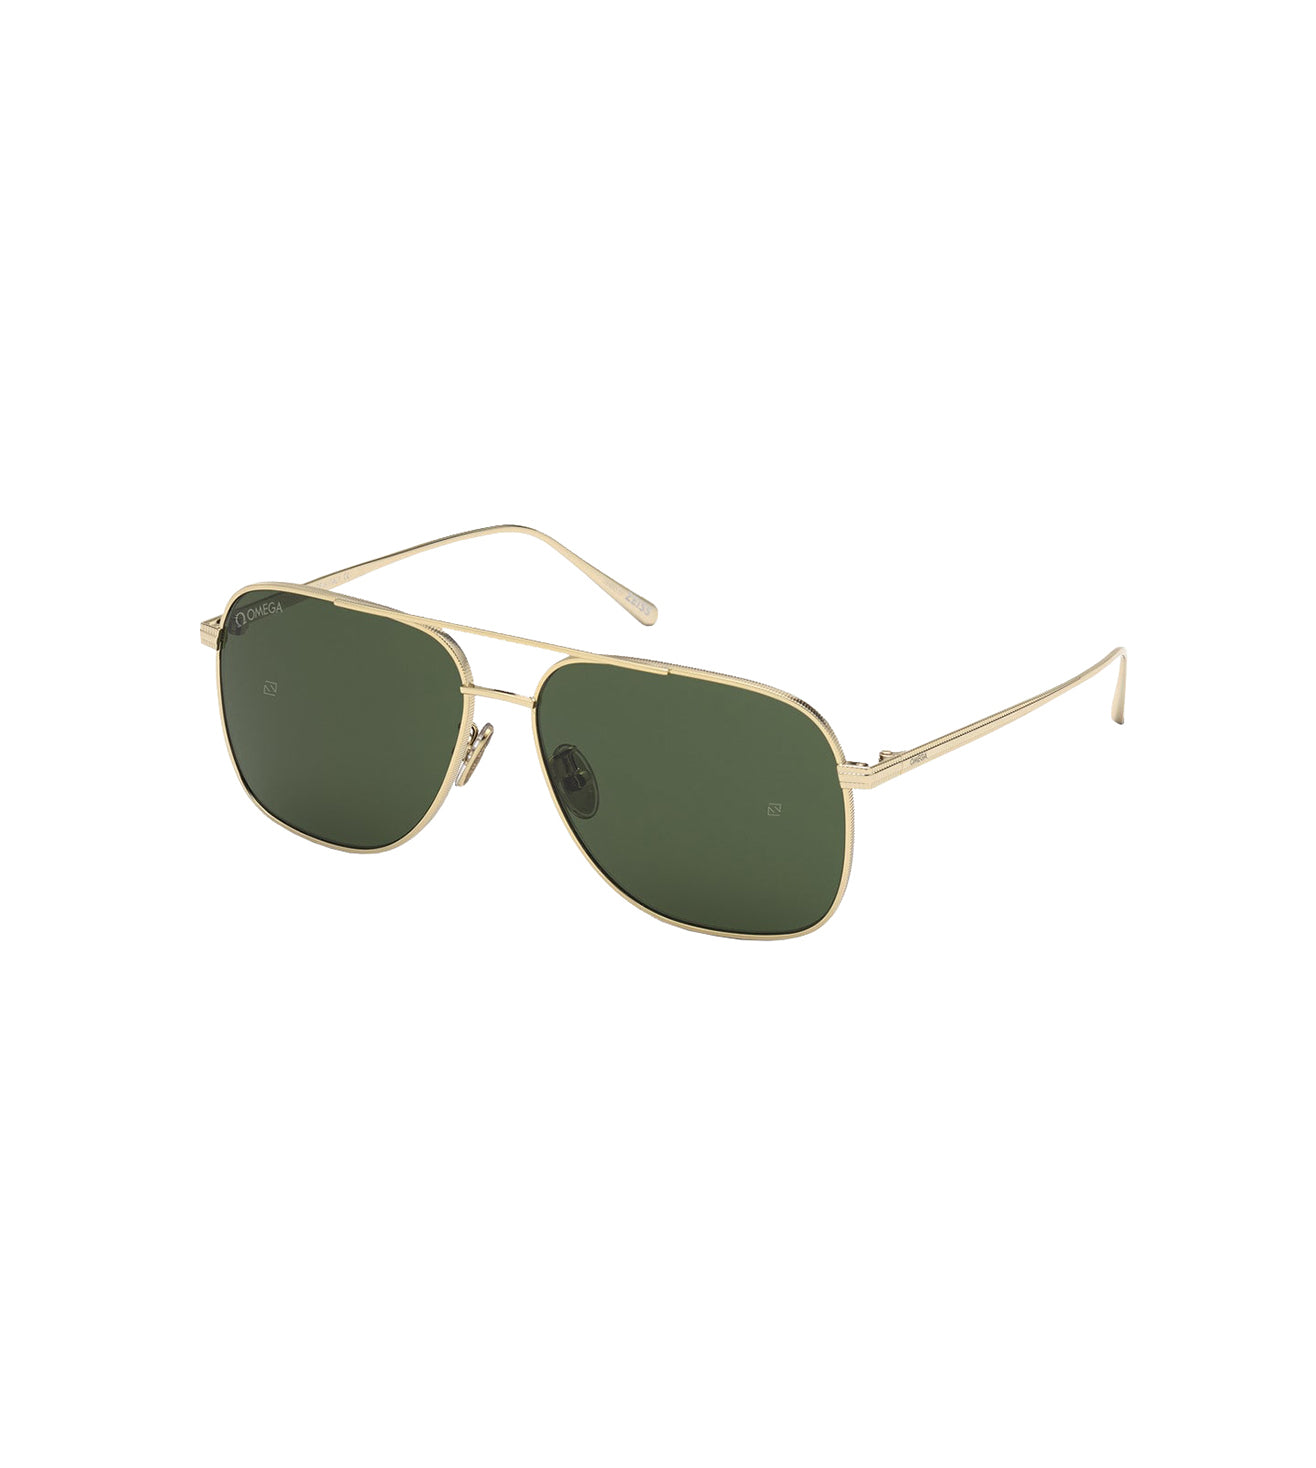 Omega Men's Green Aviator Sunglasses